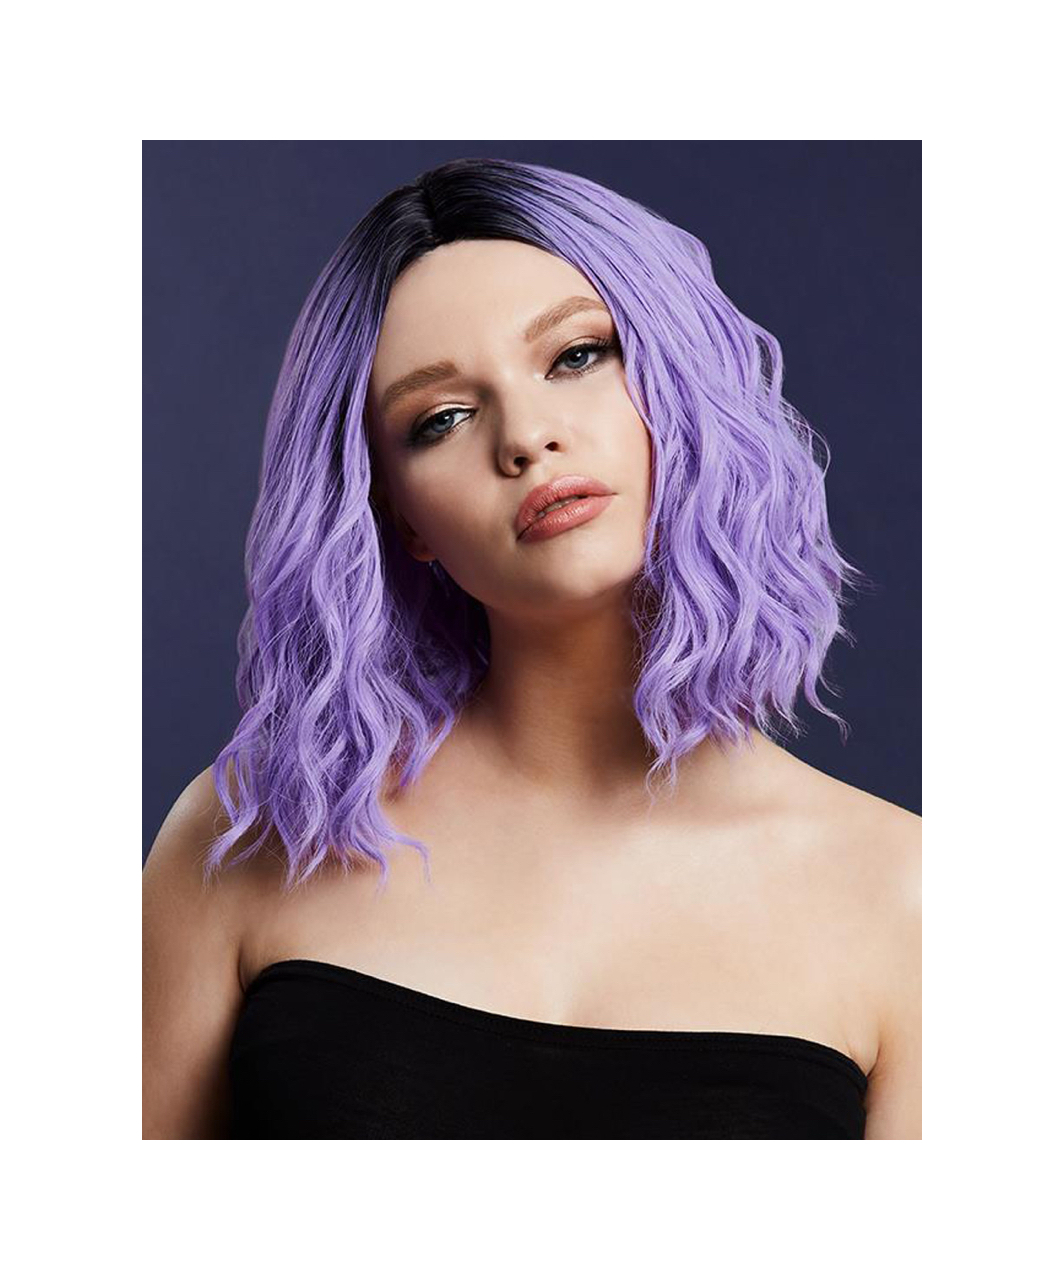 Fever Cara purple/black ombre short wavy wig